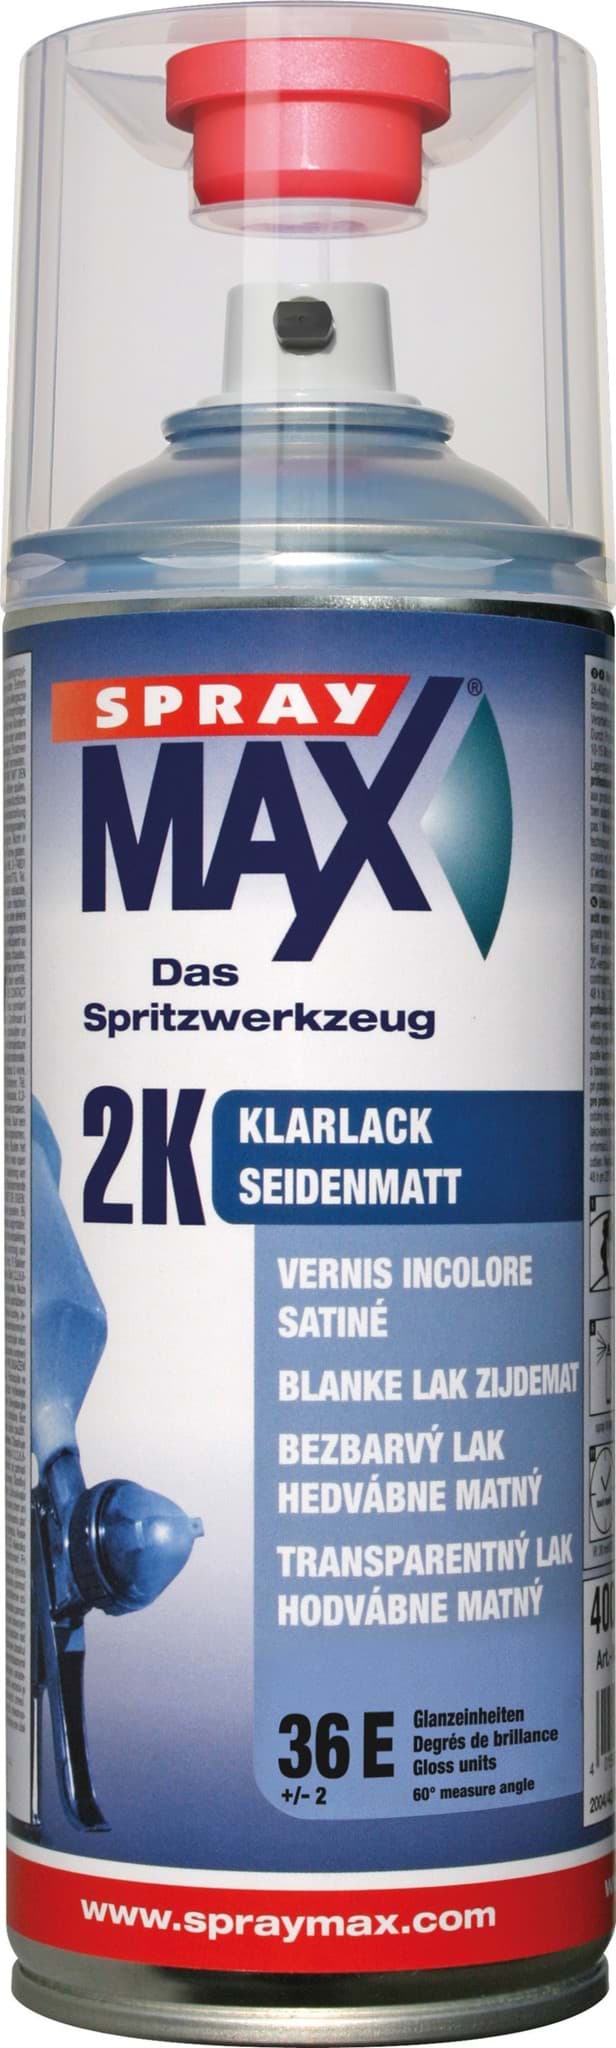 Obraz SprayMax 2K Klarlack seidenmatt 680067